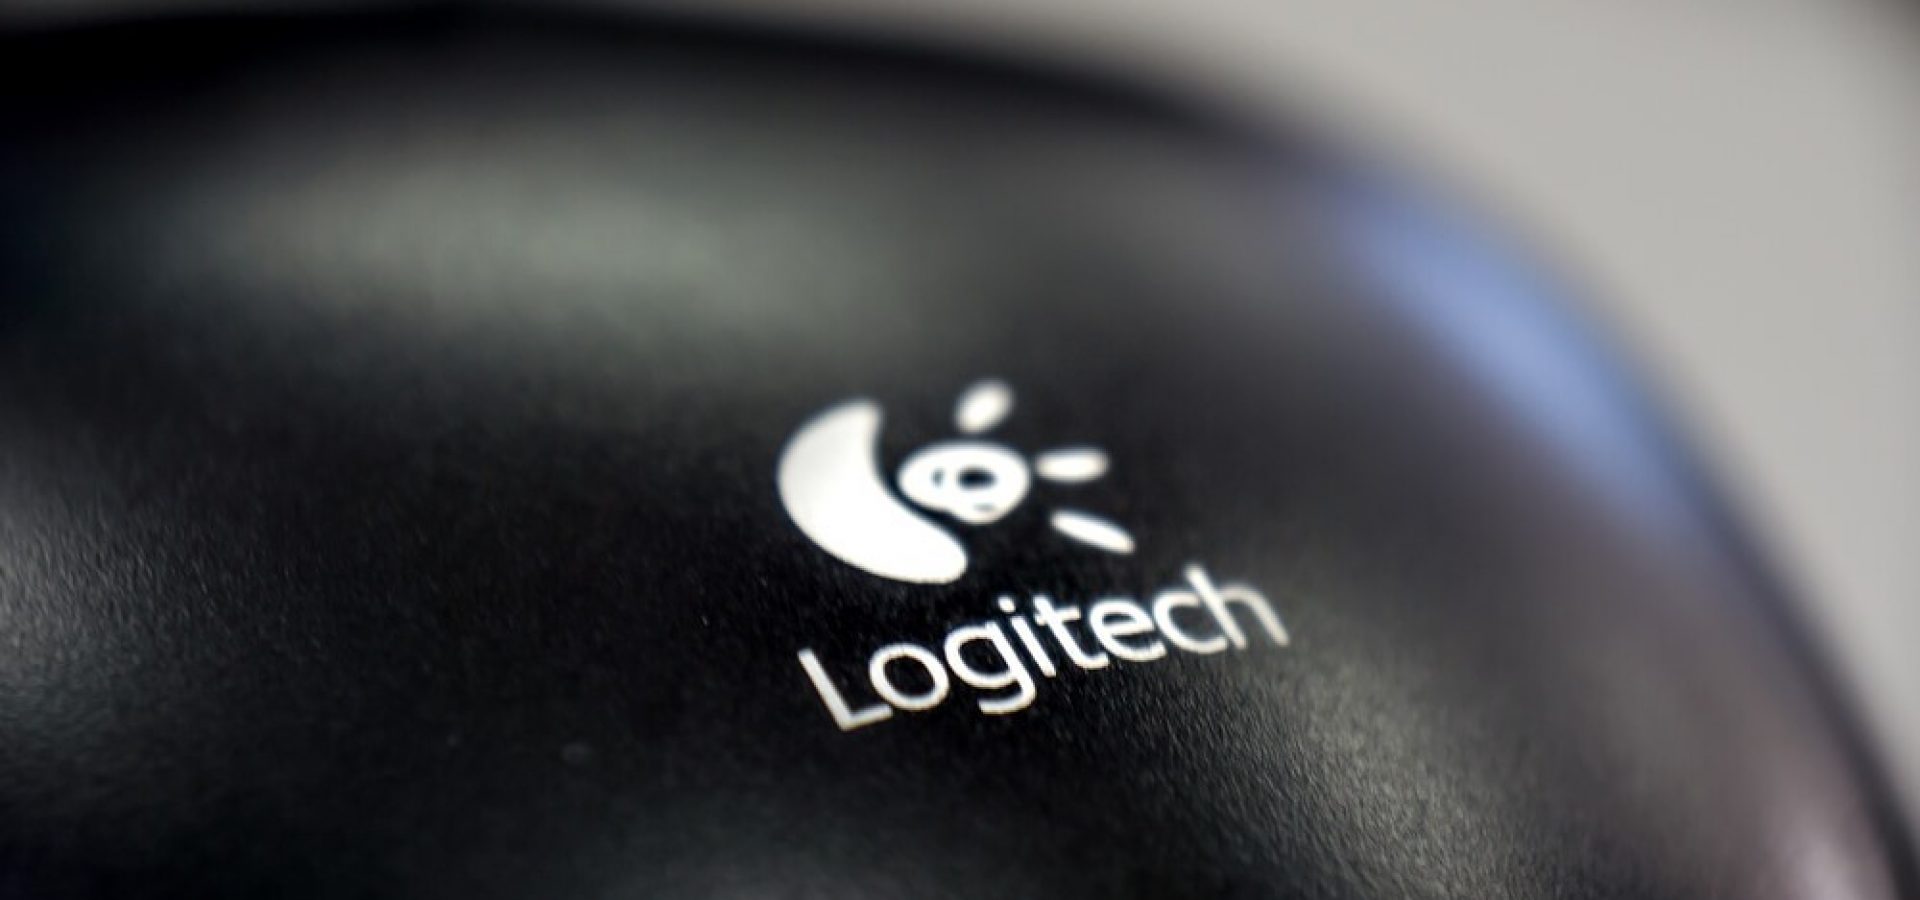 Logitech brand on a mouse